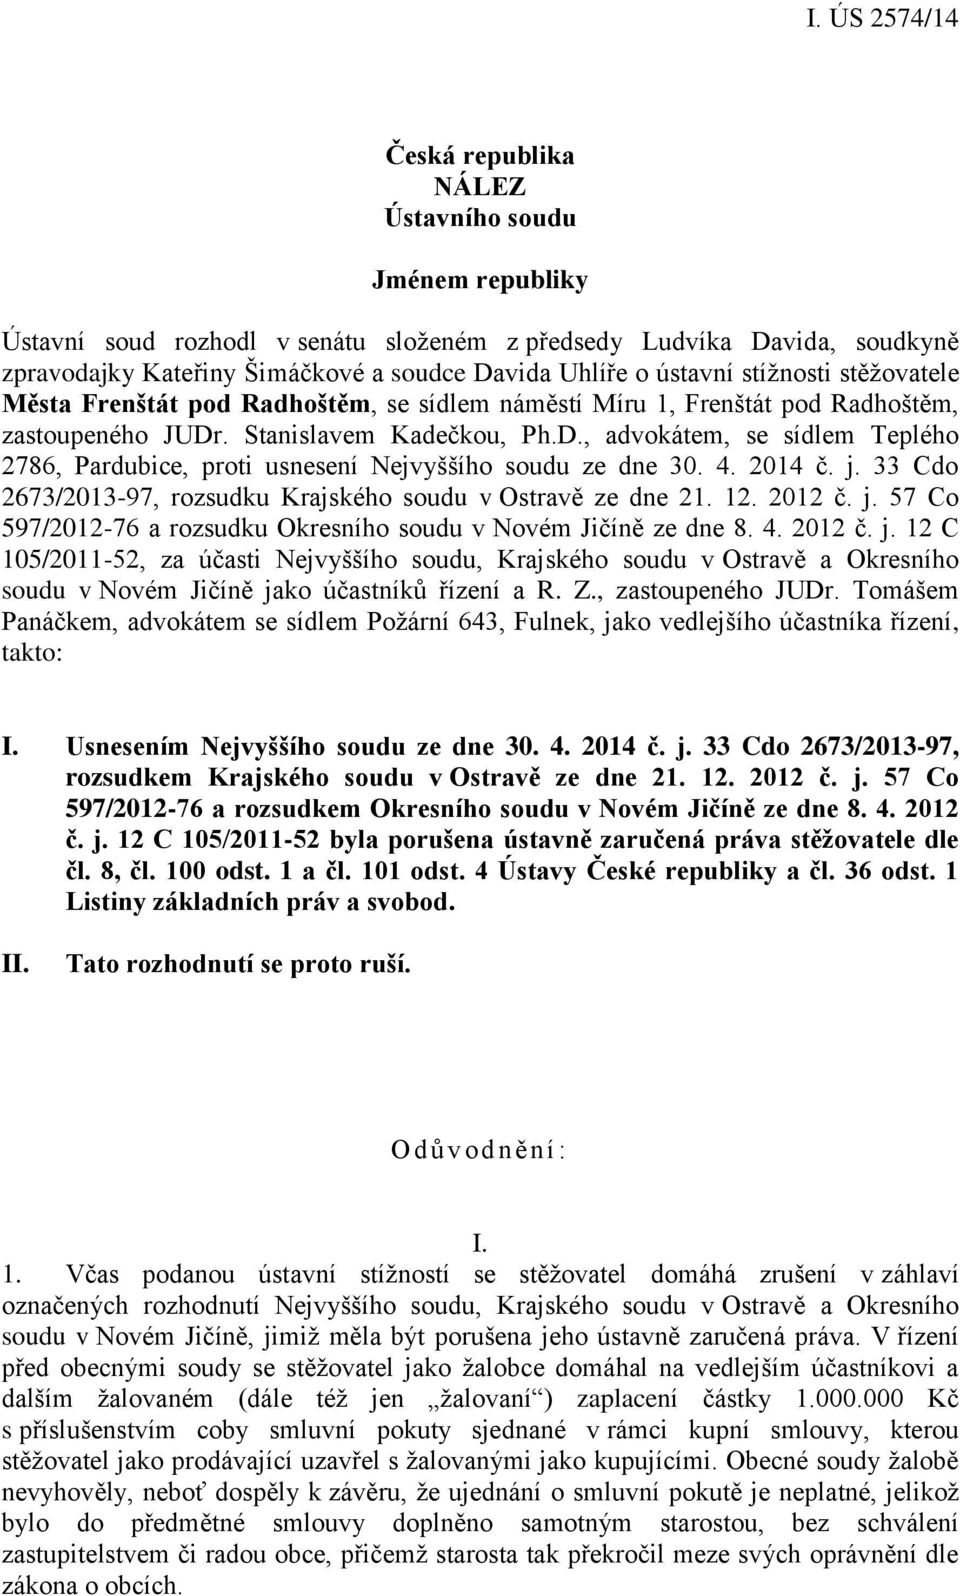 . Stanislavem Kadečkou, Ph.D., advokátem, se sídlem Teplého 2786, Pardubice, proti usnesení Nejvyššího soudu ze dne 30. 4. 2014 č. j. 33 Cdo 2673/2013-97, rozsudku Krajského soudu v Ostravě ze dne 21.